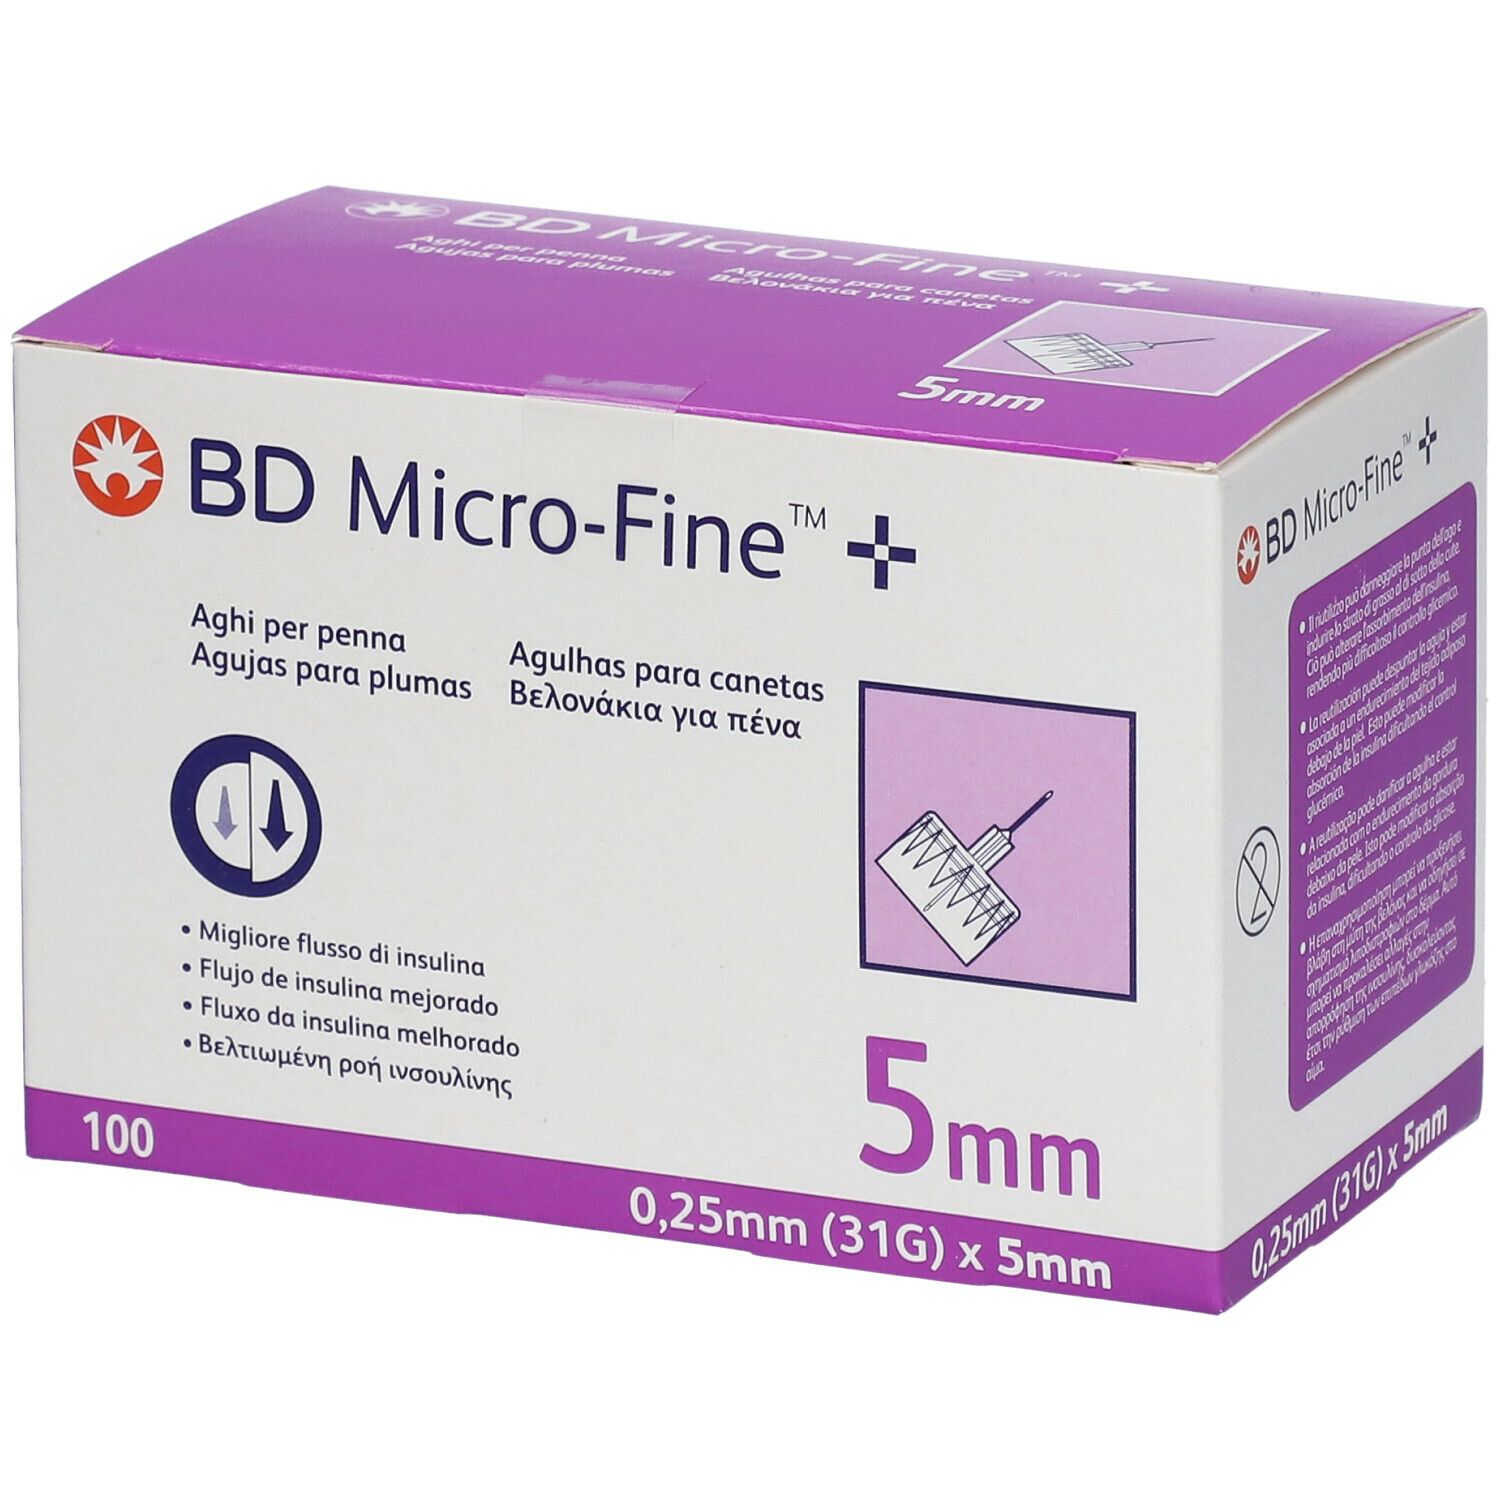 BD Micro-Fine™+ Aghi per Penna 0,25 mm 31G x 5 mm 100 pz